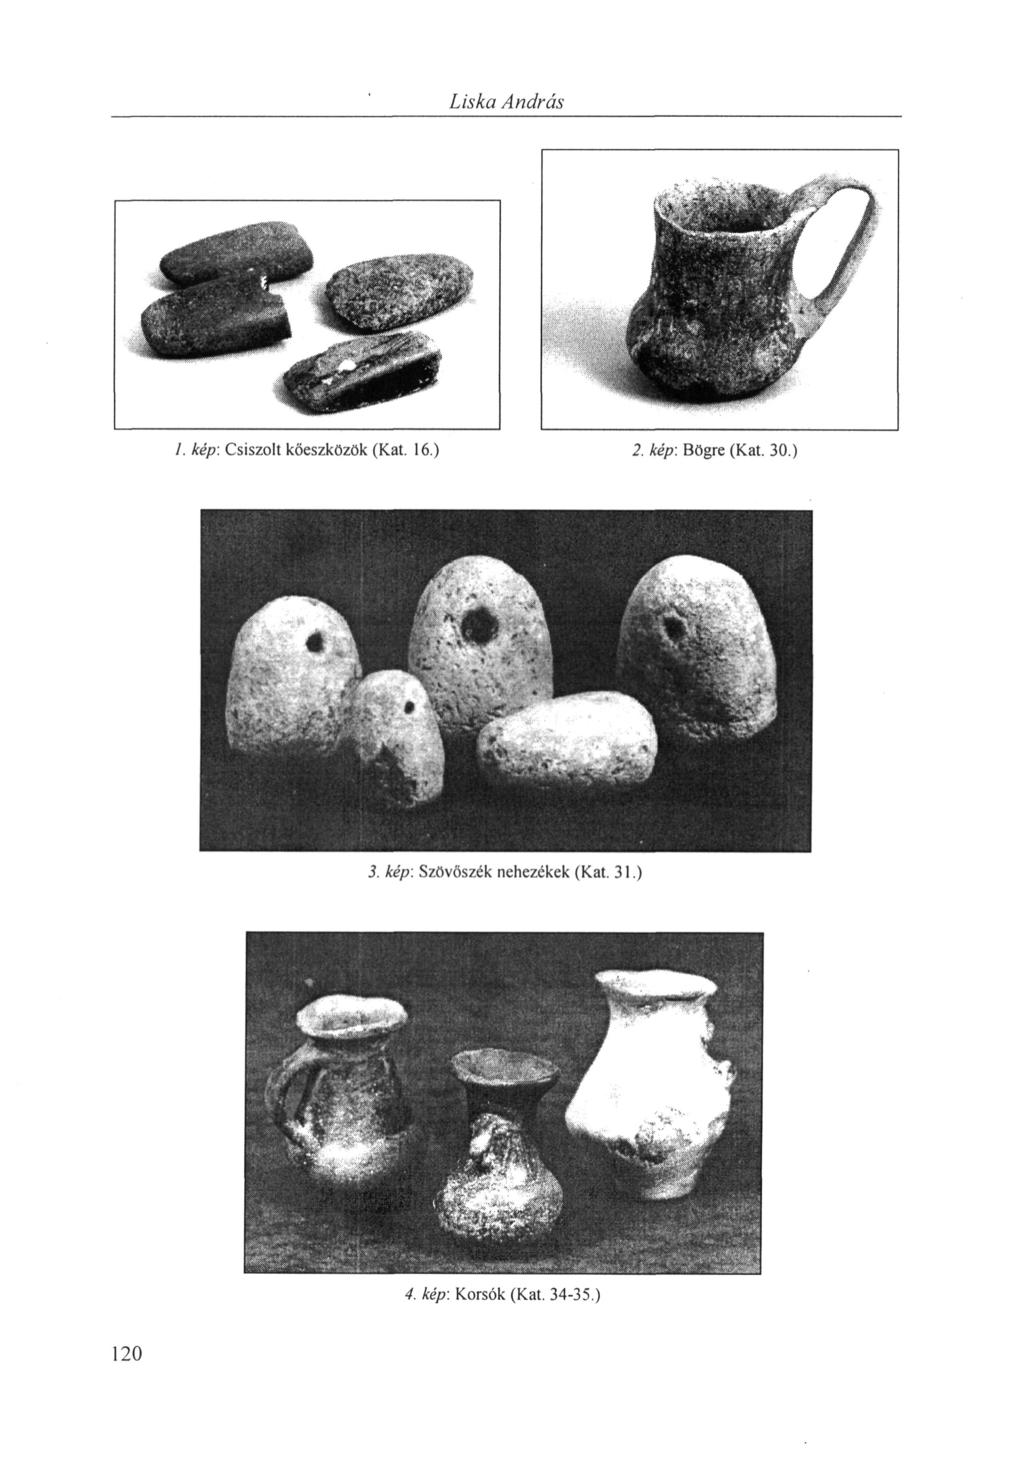 Liska András 1. kép: Csiszolt kőeszközök (Kat. 16.) 2. kép: Bögre (Kat.